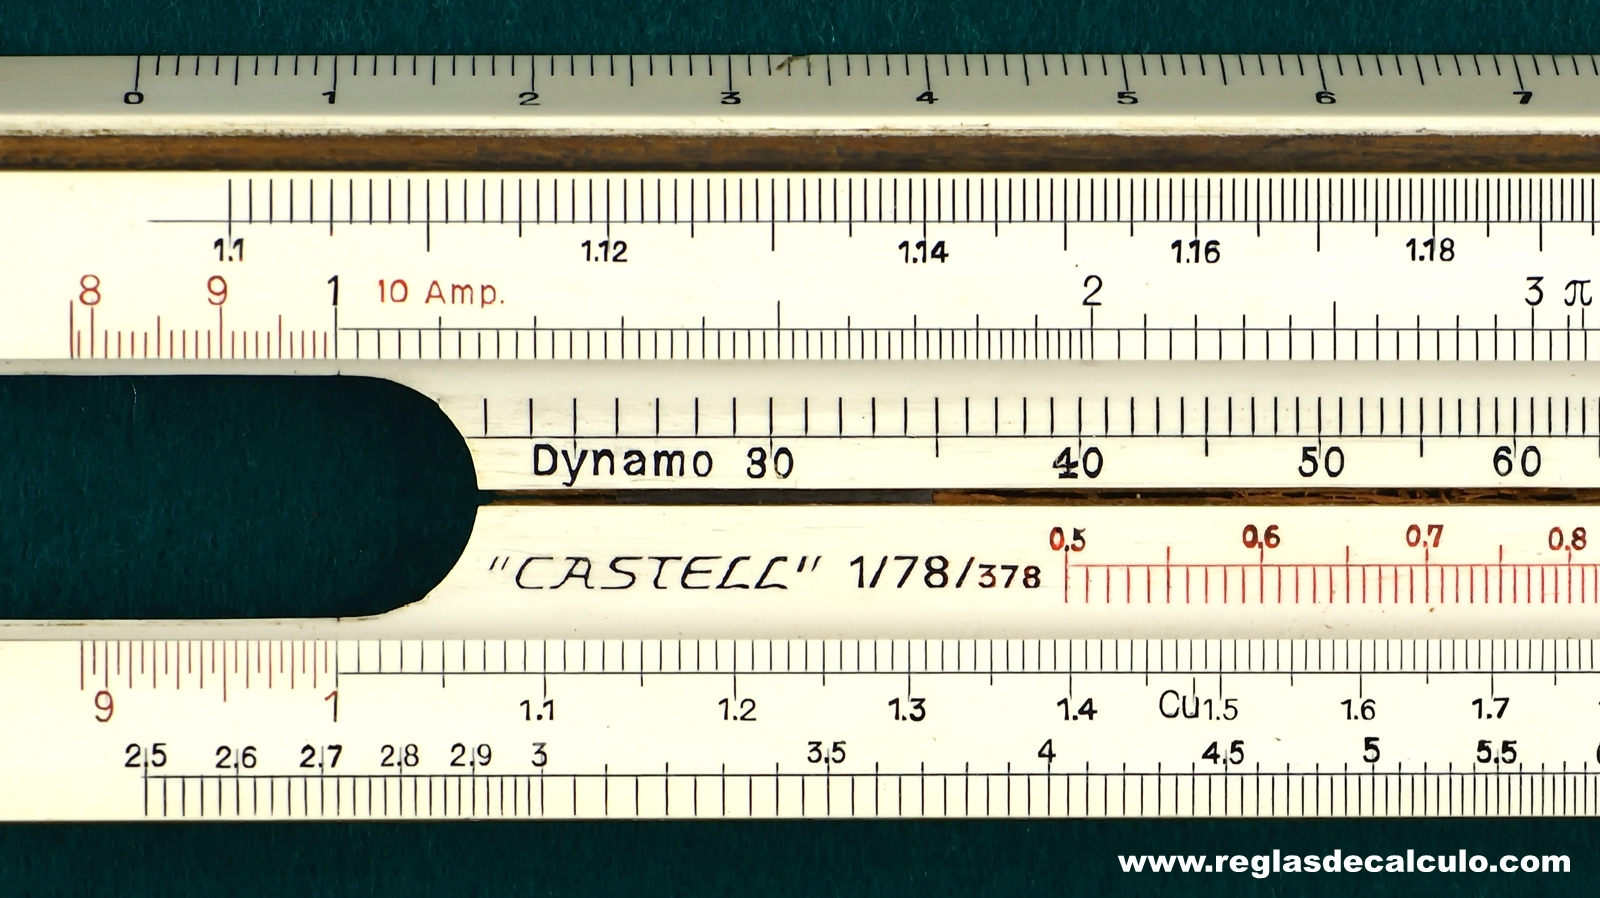 Regla de Calculo Slide rule Faber Castell 1/78/378